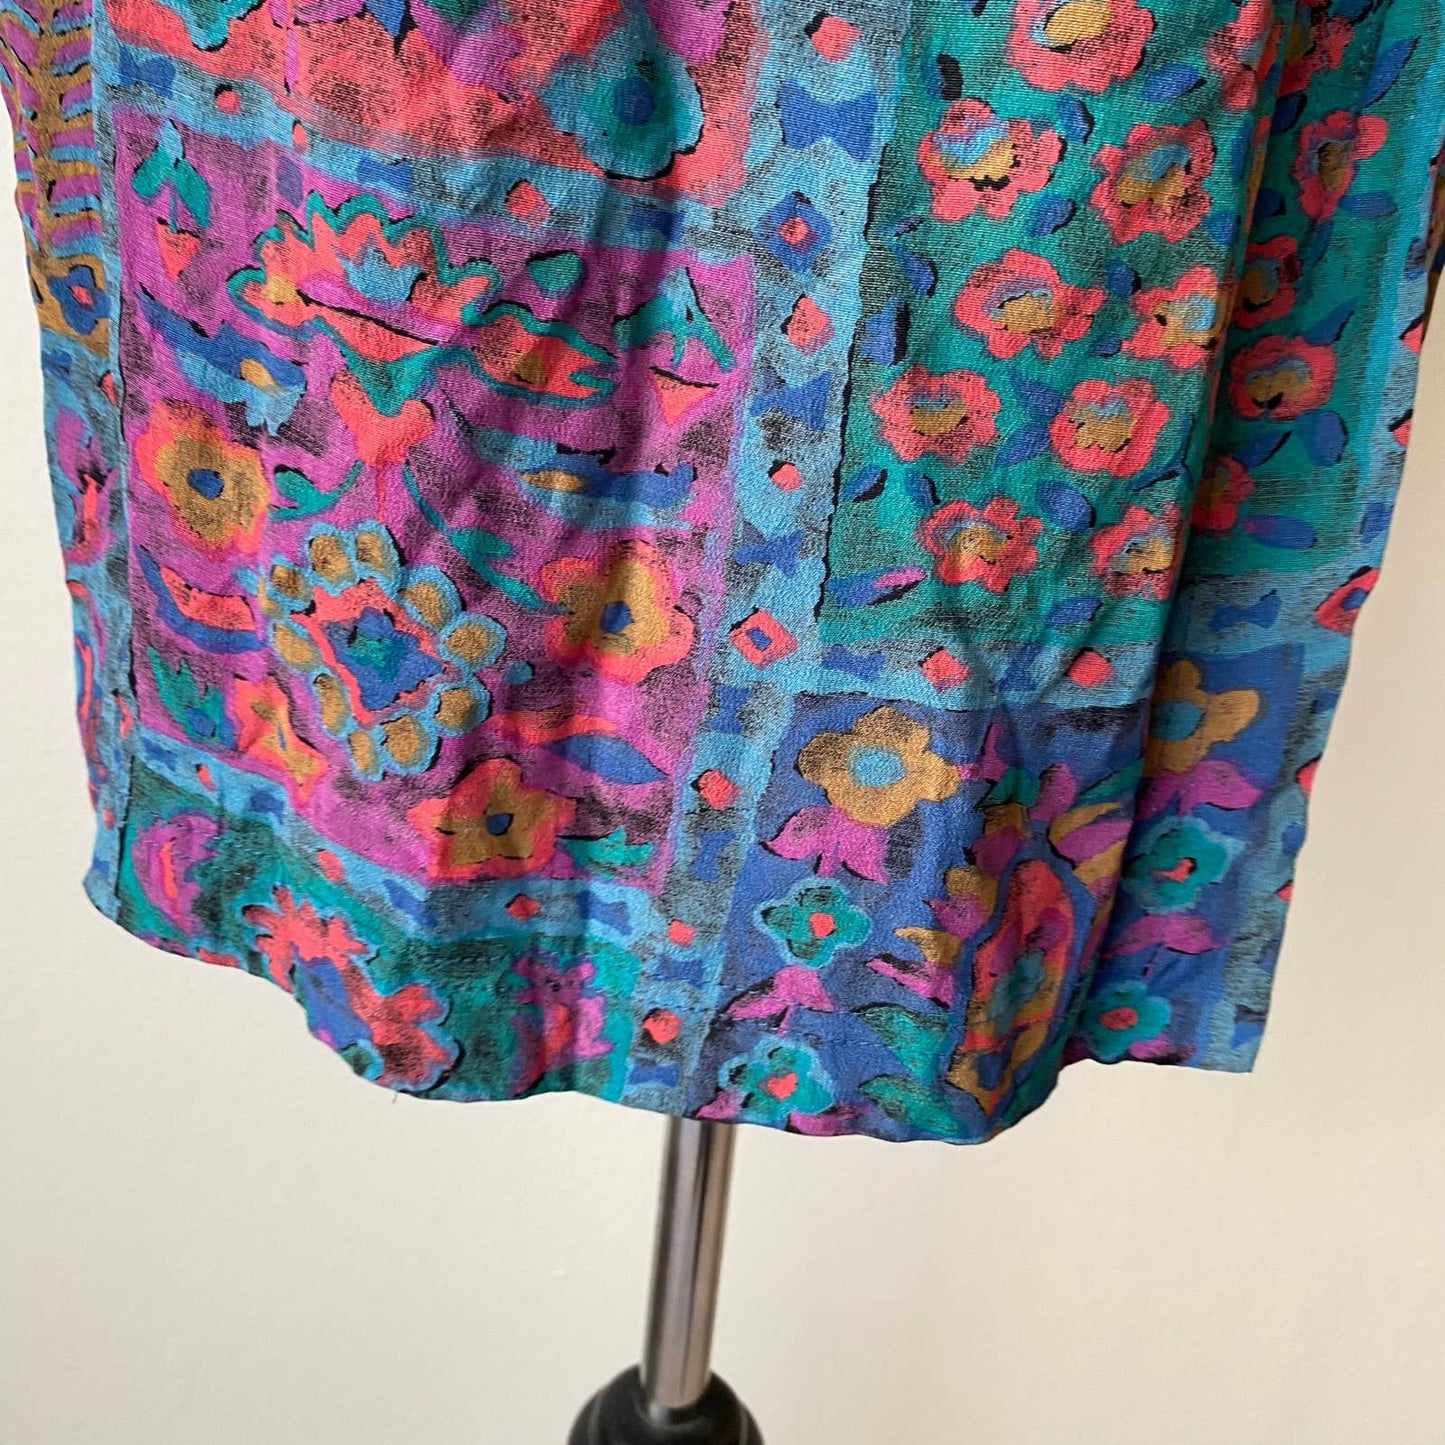 Karen Kane sz 8 Vintage 90s abstract faux wrap skirt